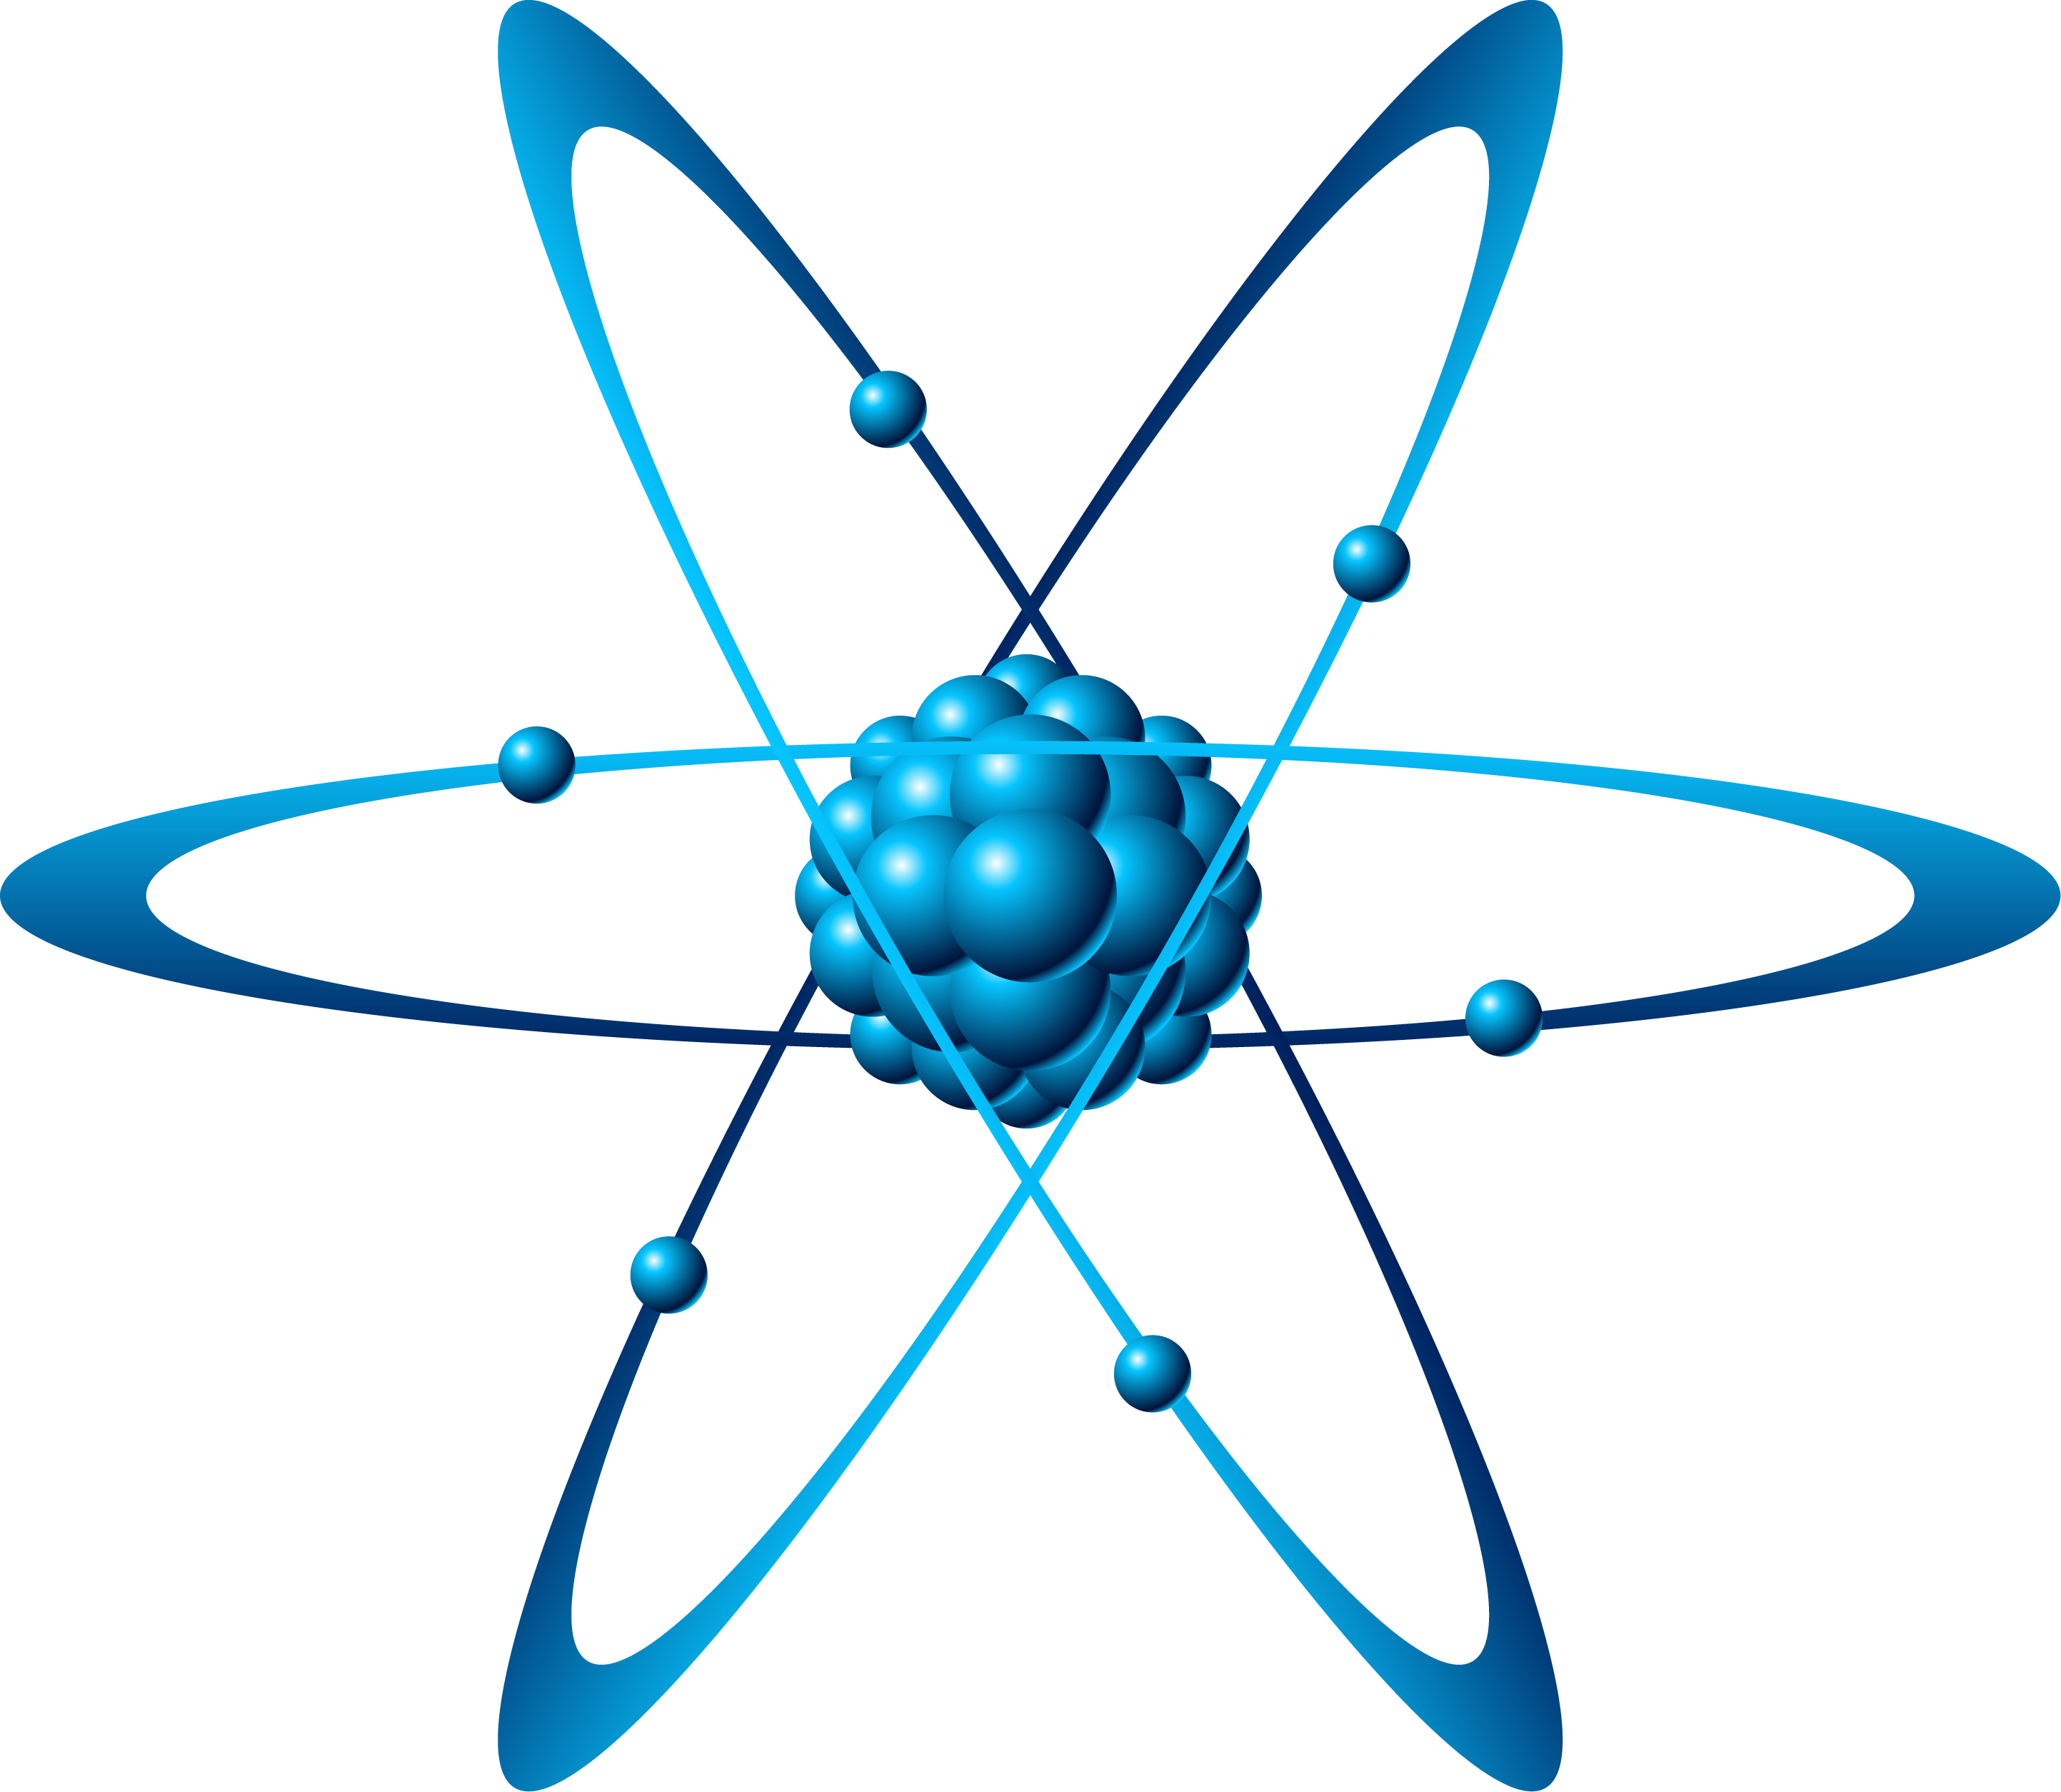 Ηλεκτρόνιο: μια τέλεια σφαίρα